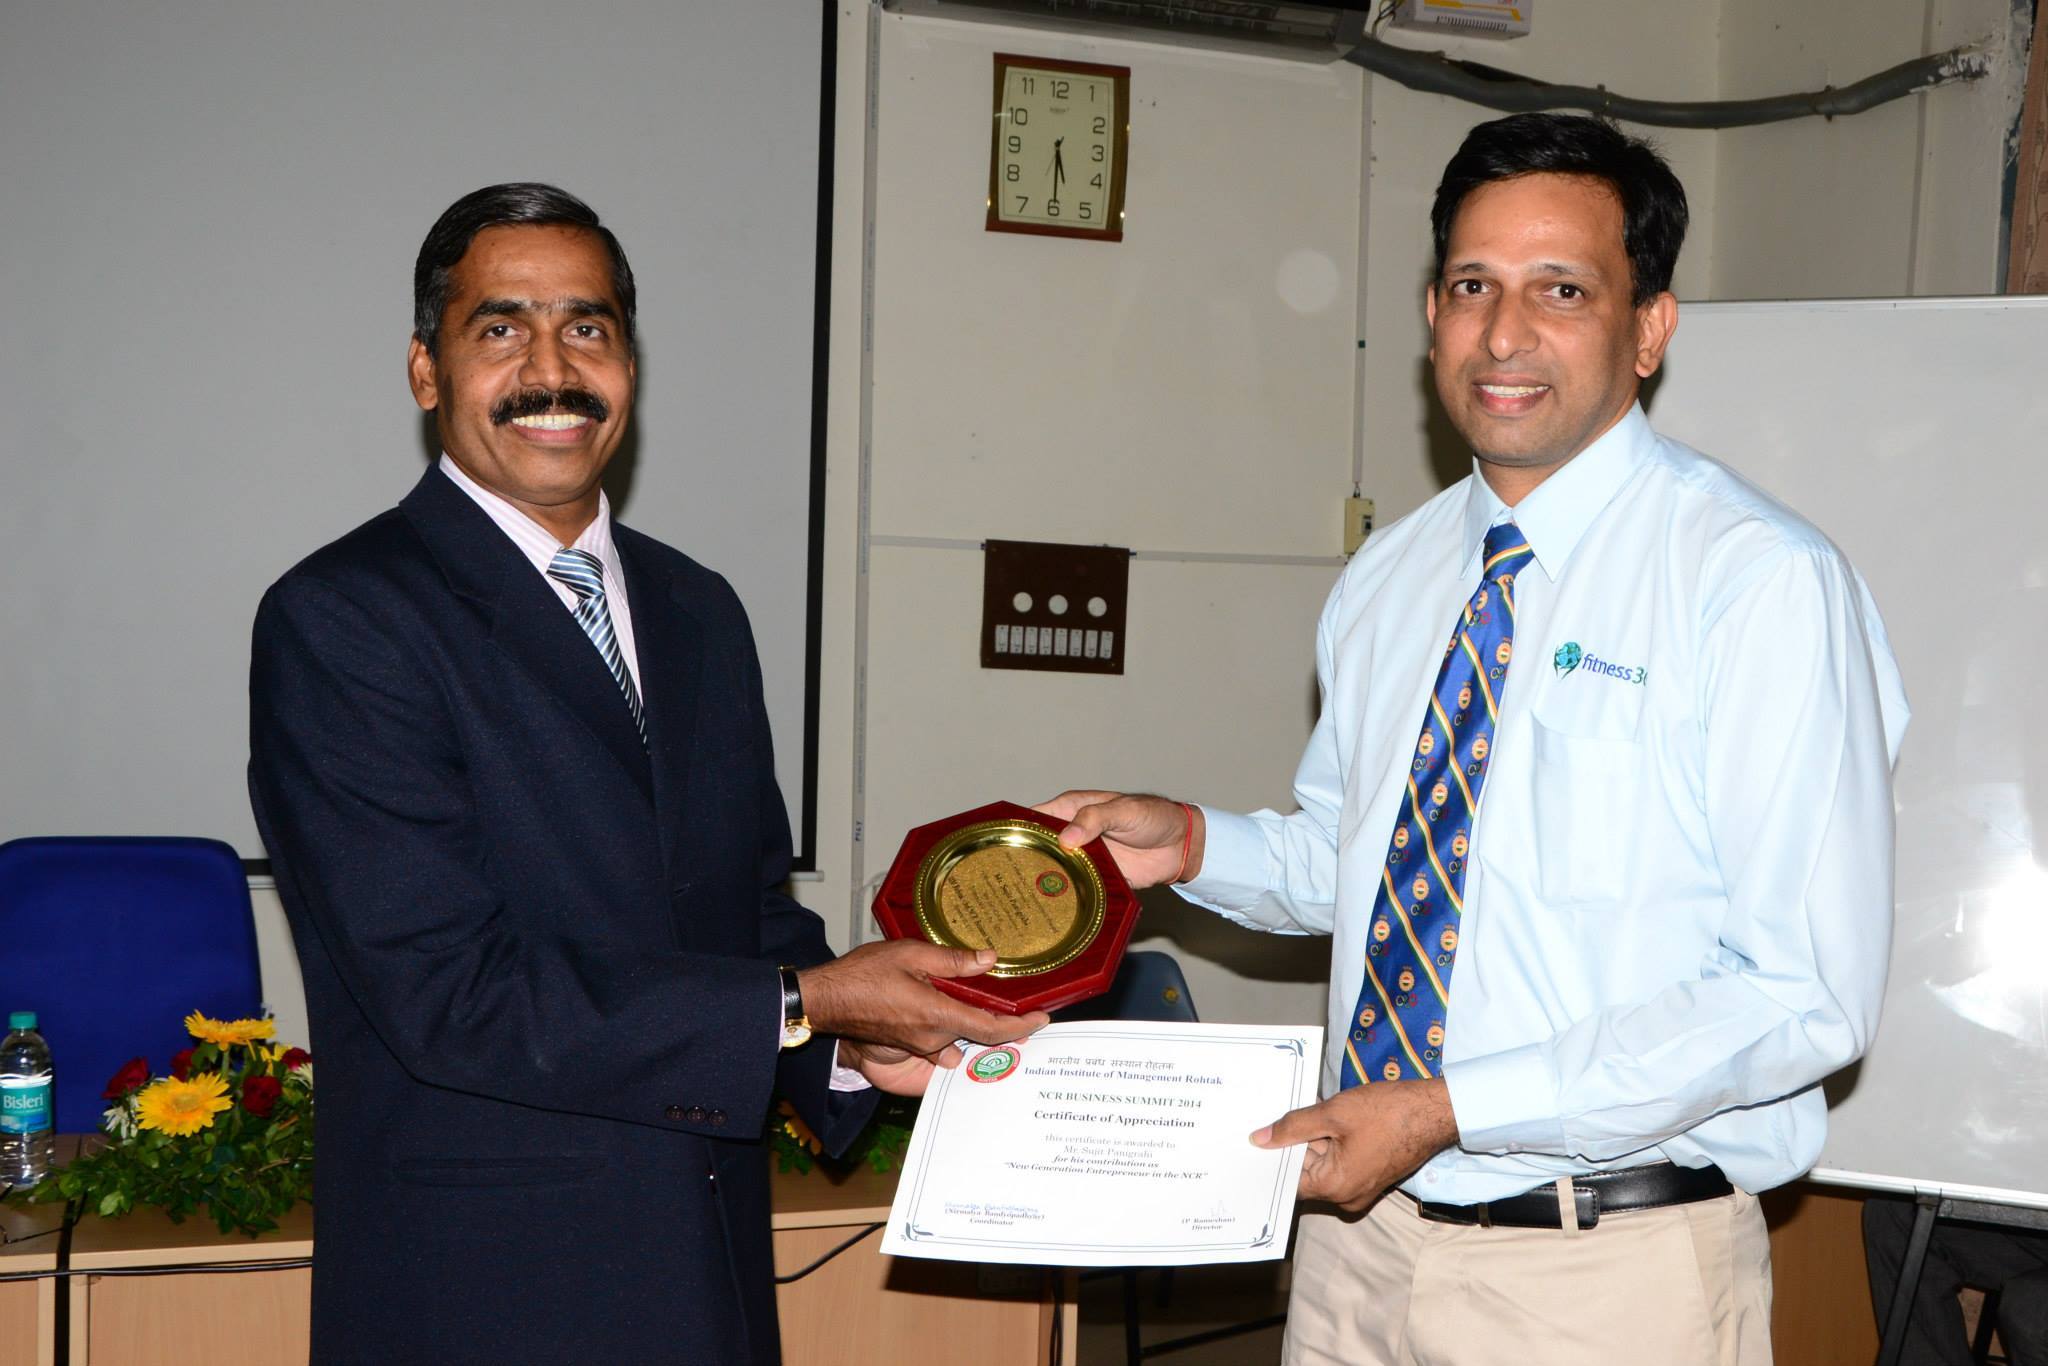 Mr. Sujit Panigrahi receiving "New Generation Entrepreneur" award from Mr. P Rameshan, Director, IIM Rohtak